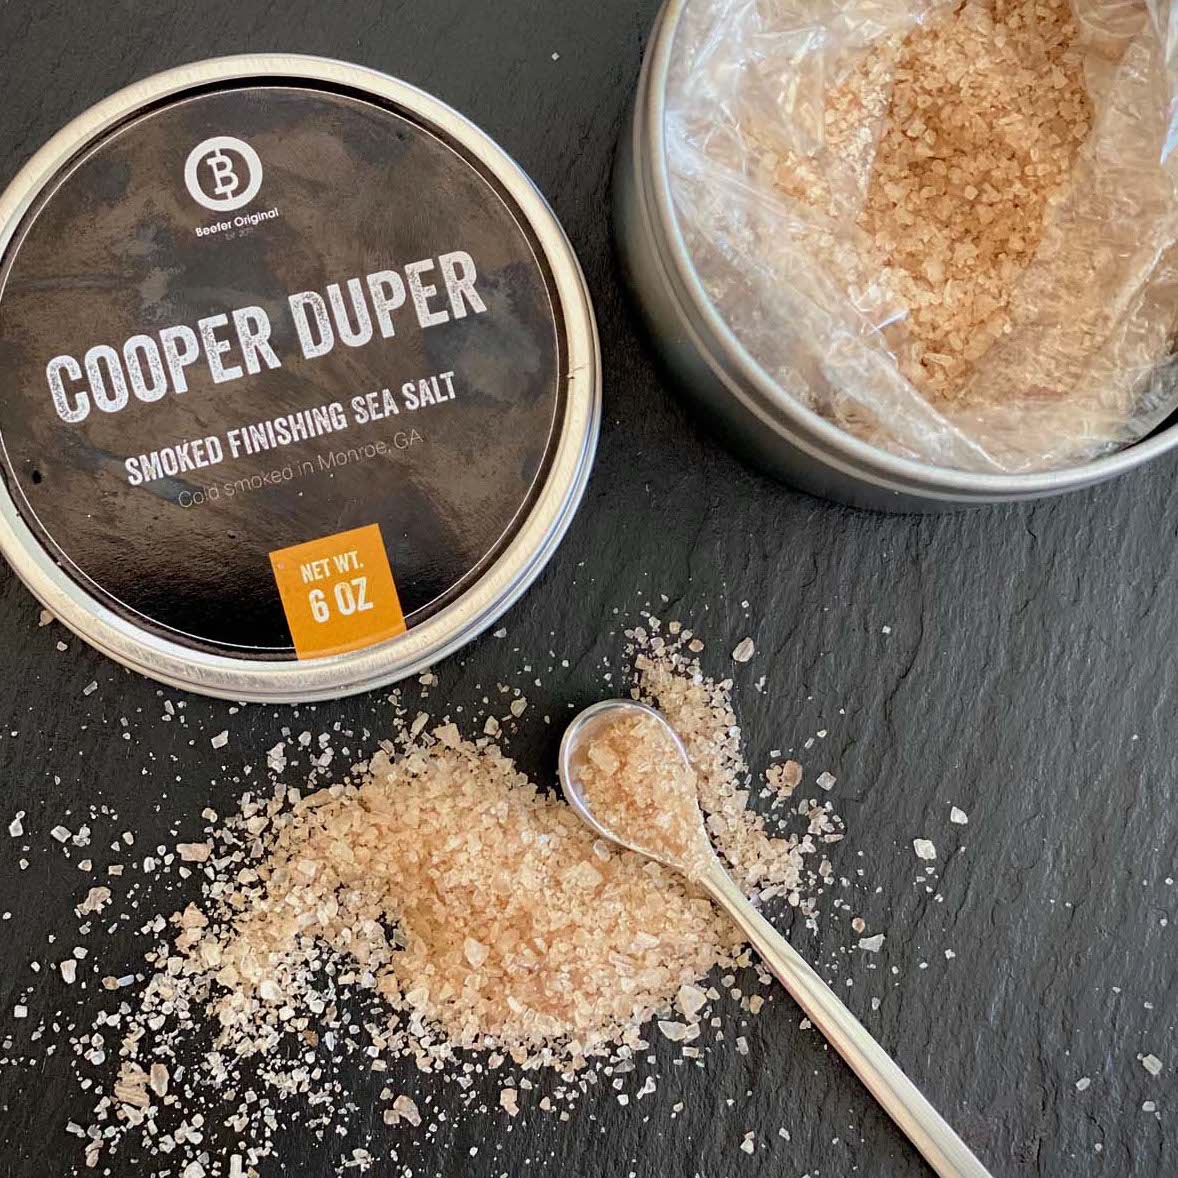 Beefer Cooper Duper